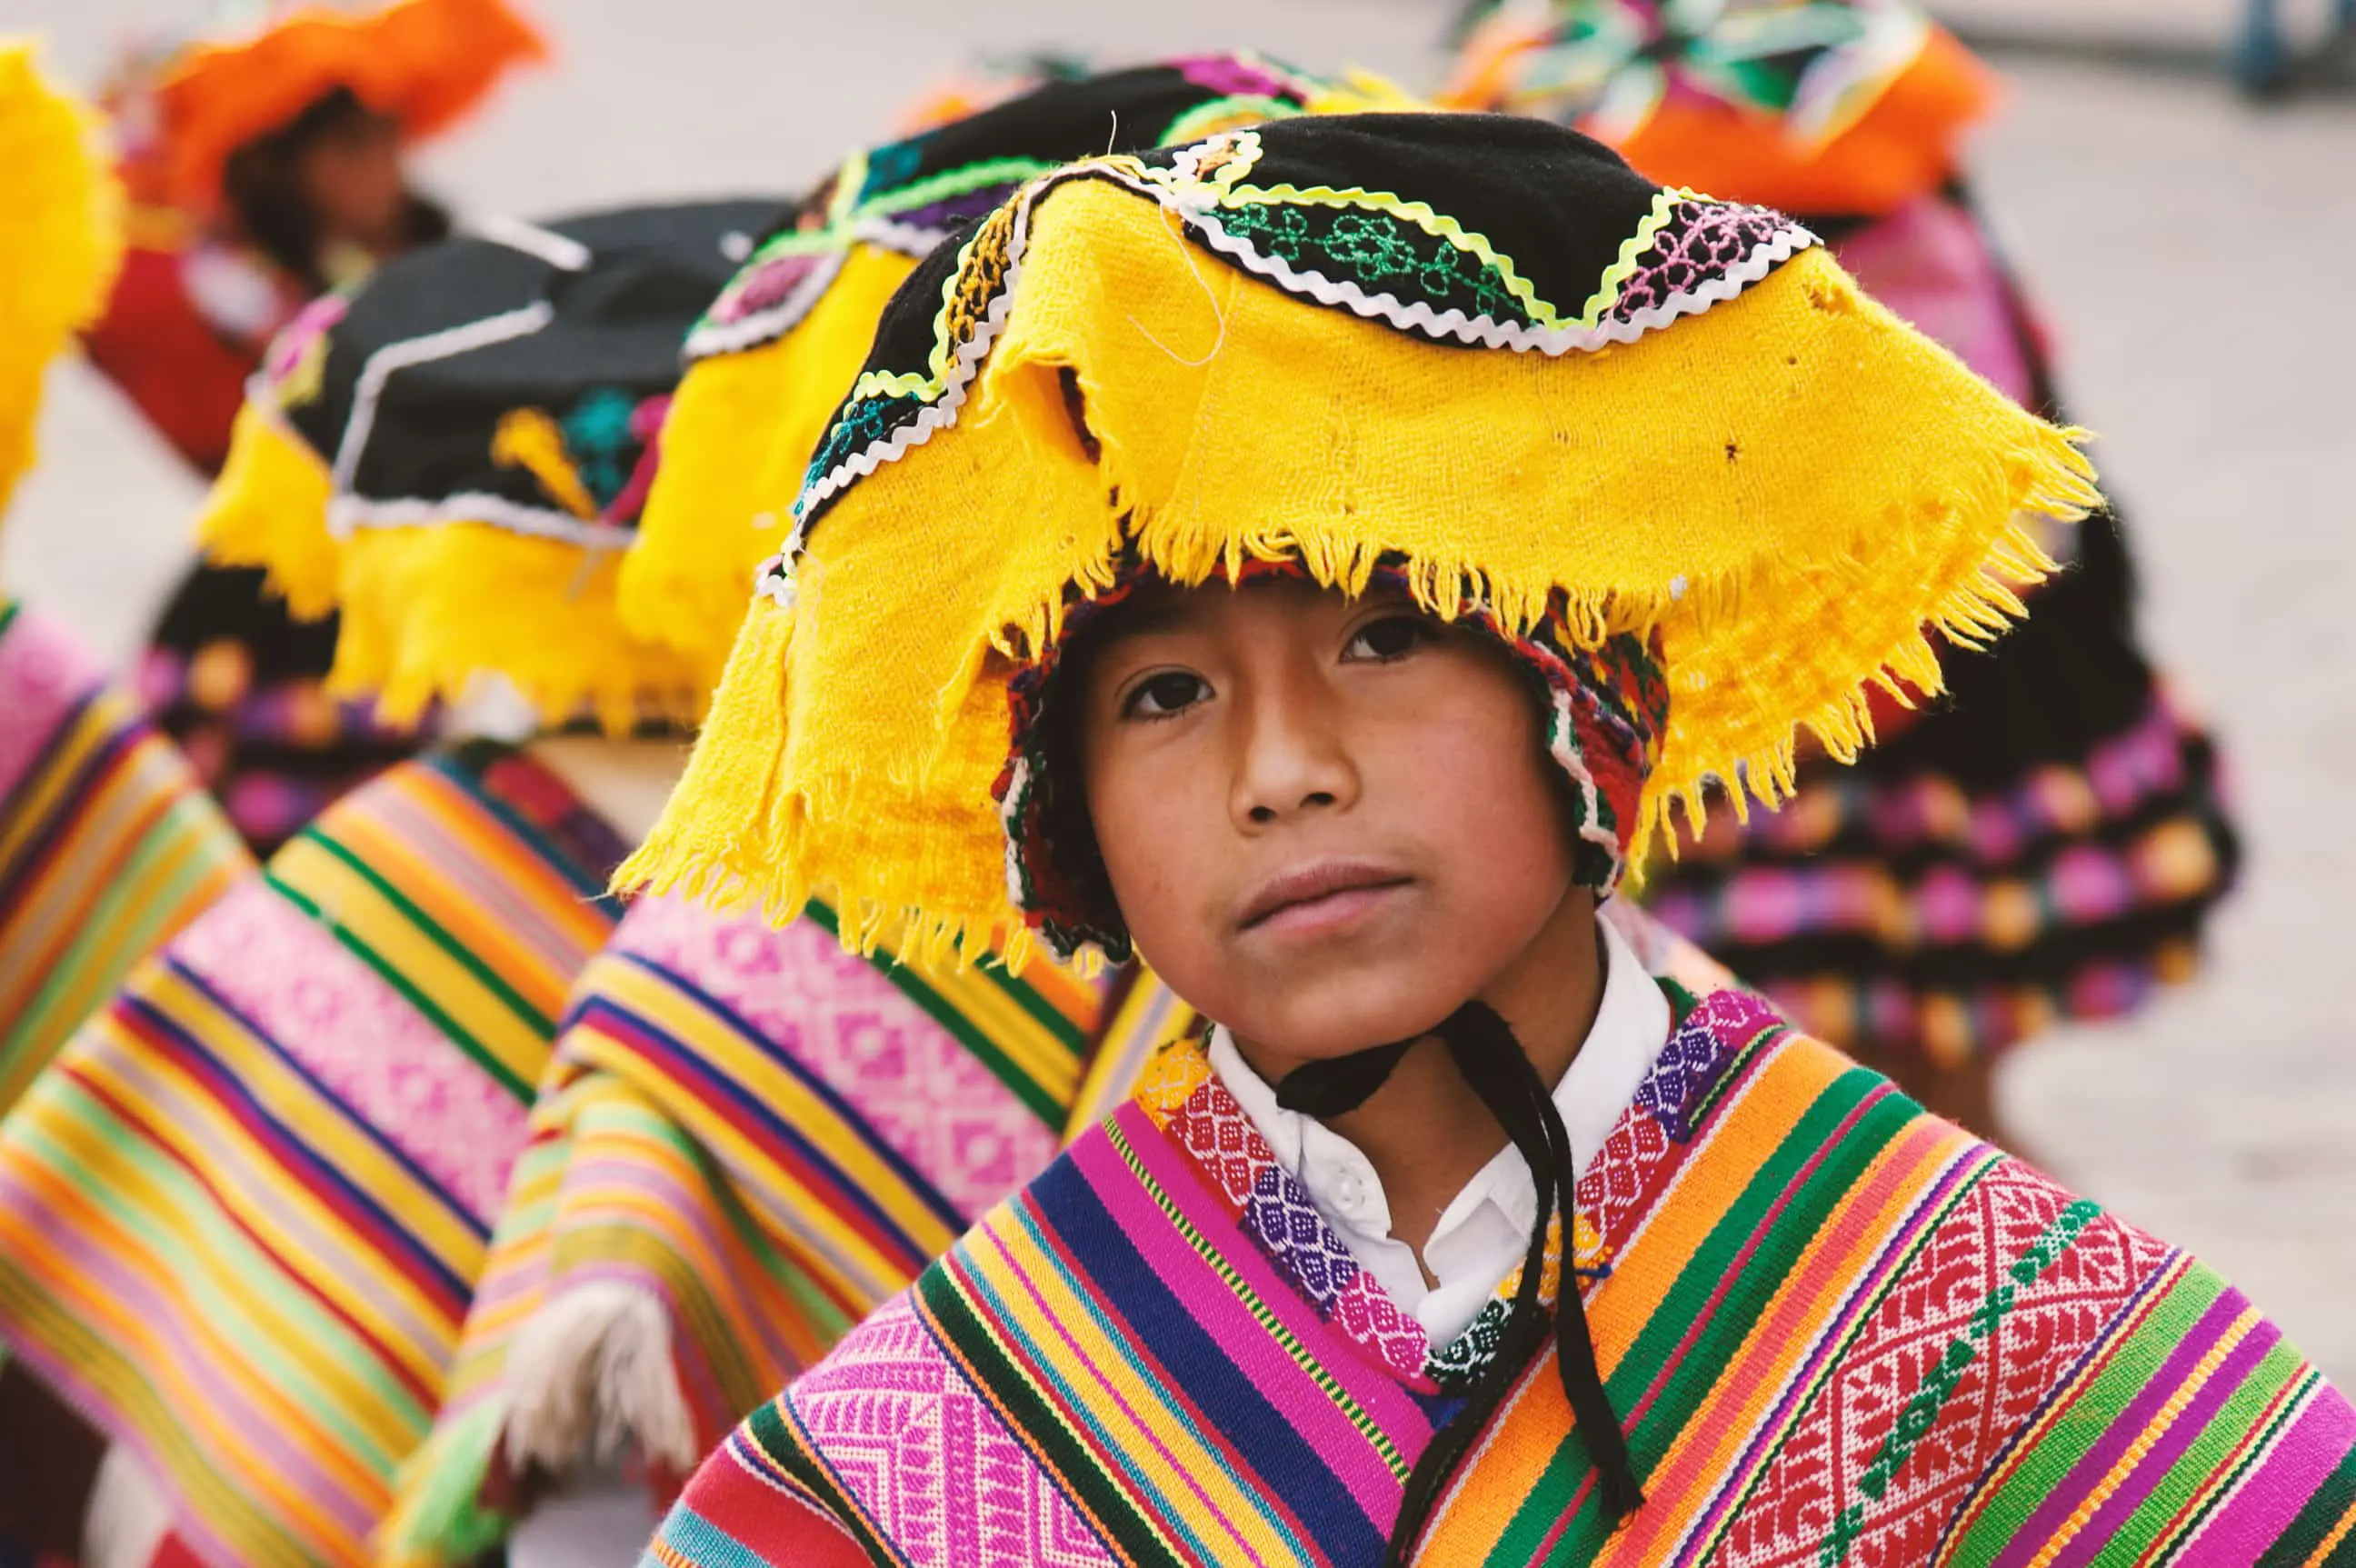 Nativi peruviani, tra battaglie per la legalità e desiderio di cambiamento